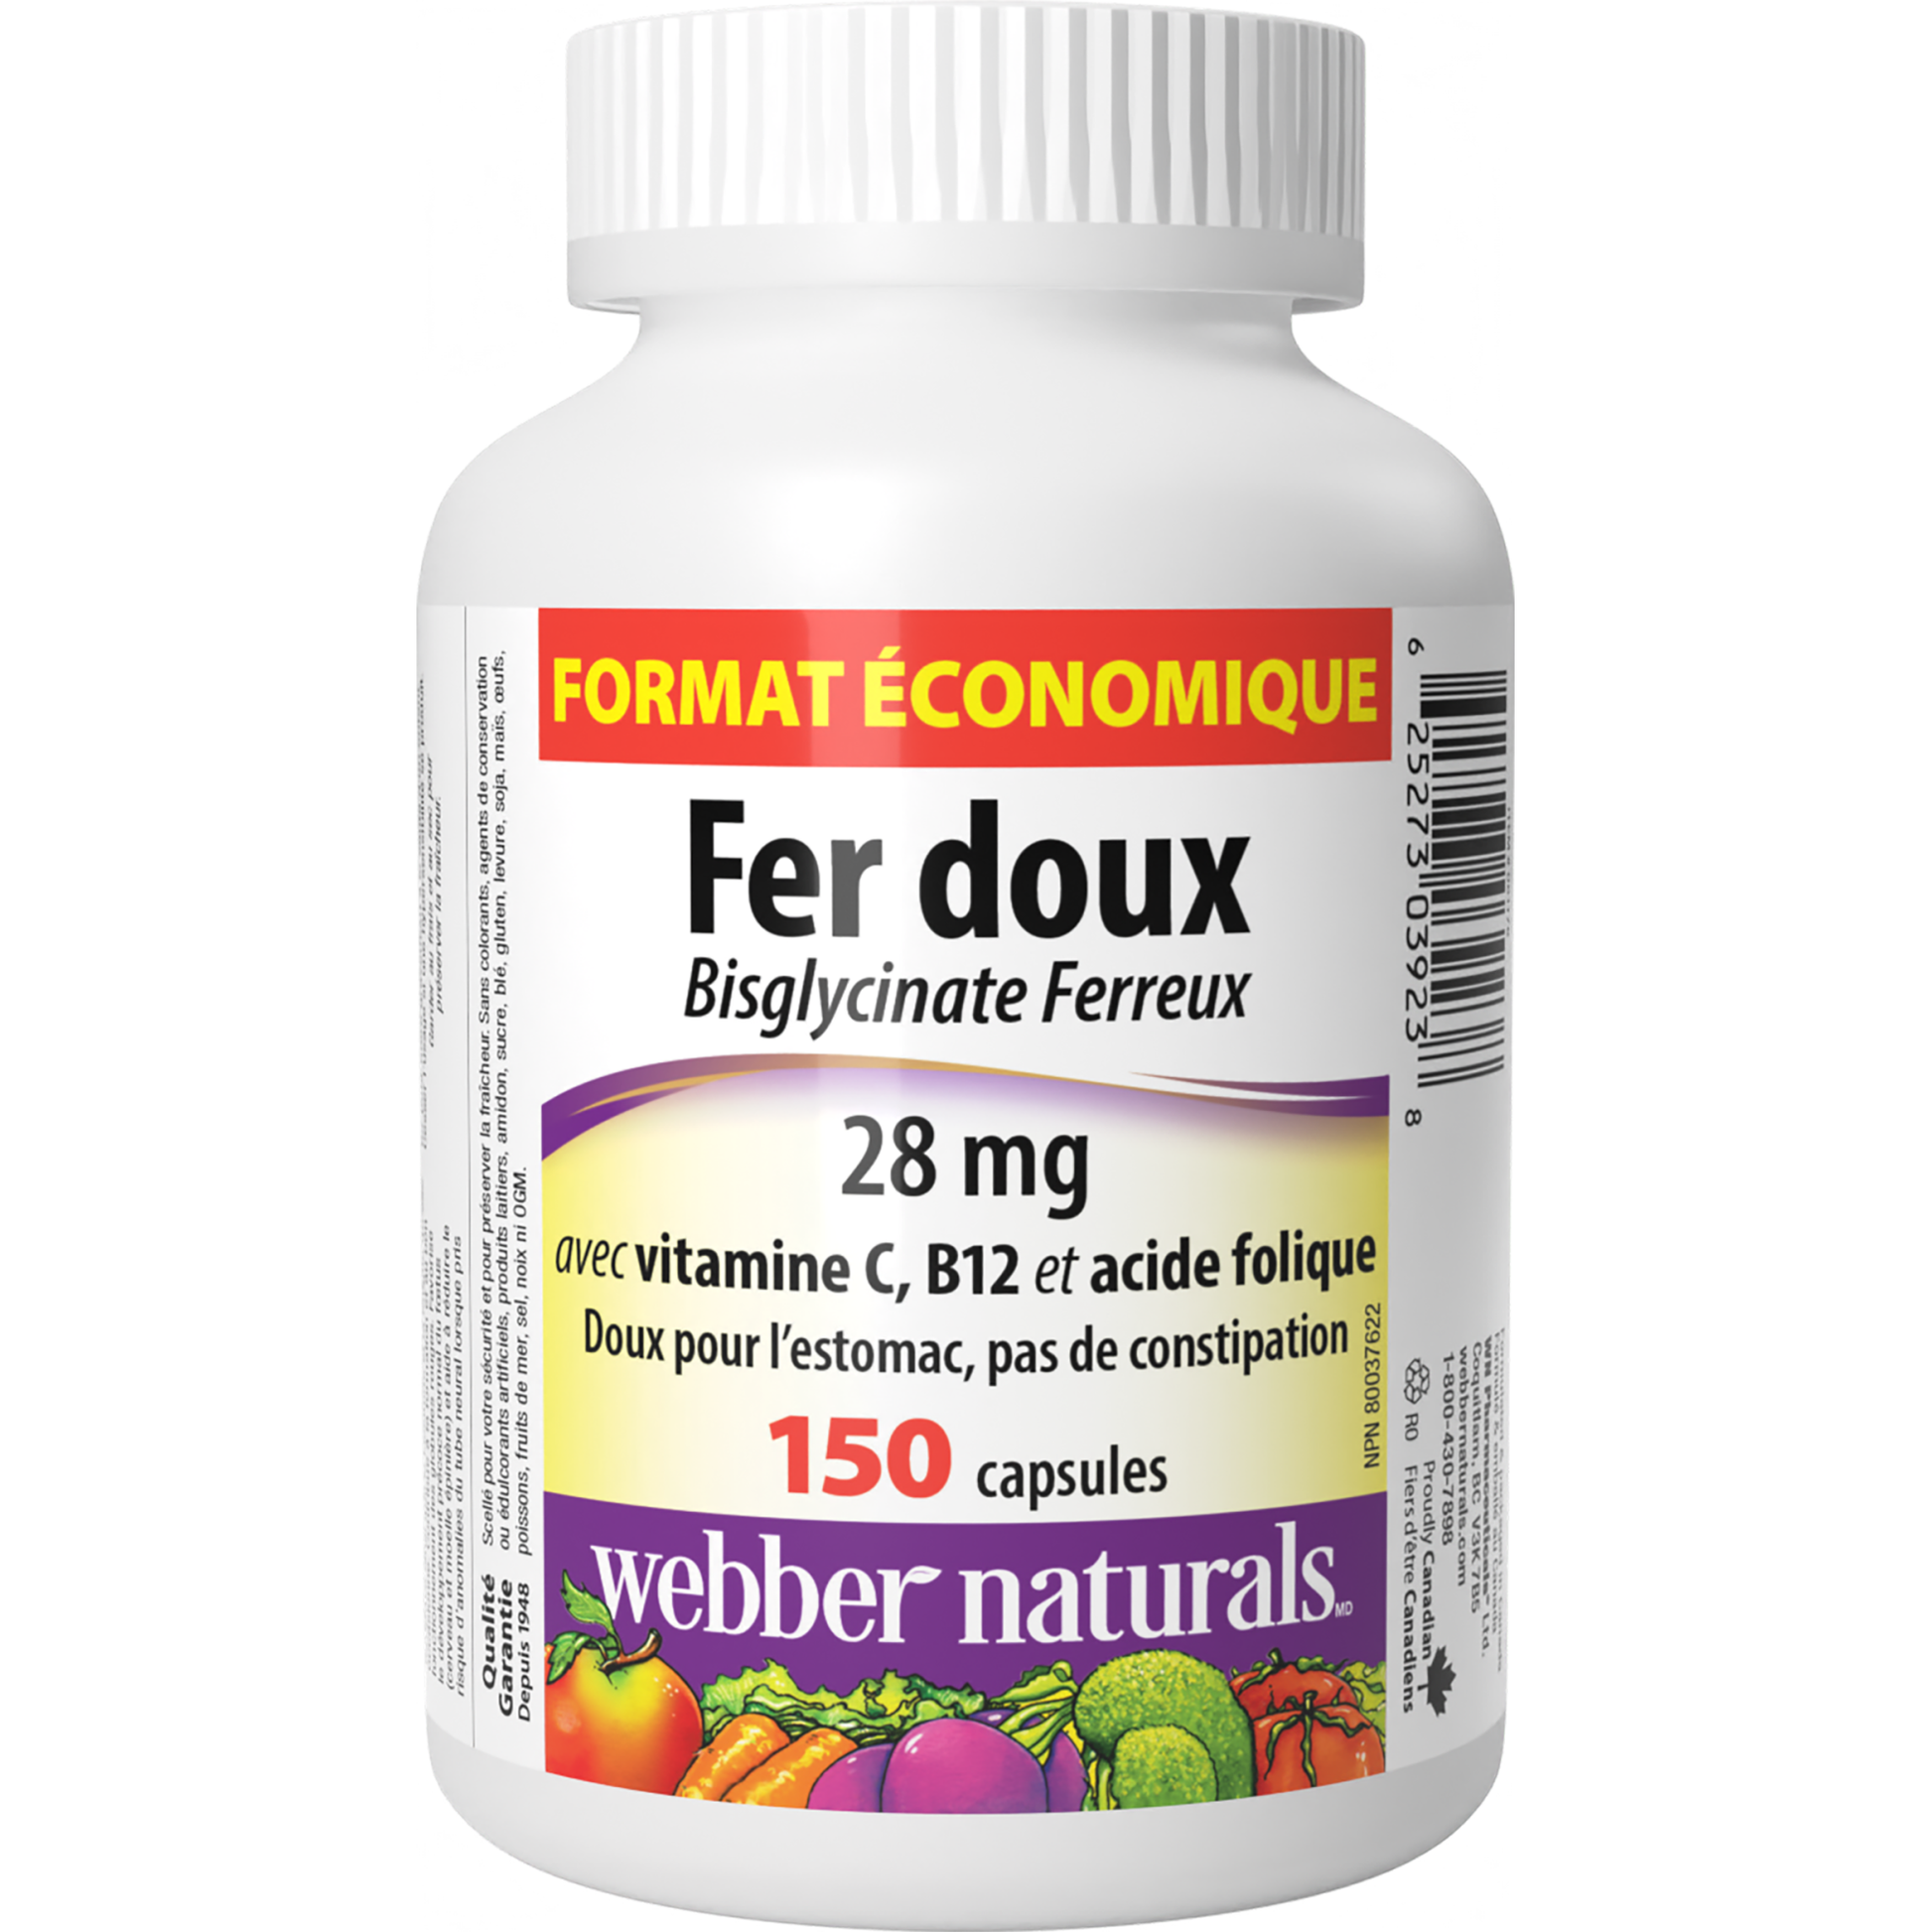 Fer doux avec vitamine C, B12 et acide folique  28 mg for Webber Naturals|v|hi-res|WN3923